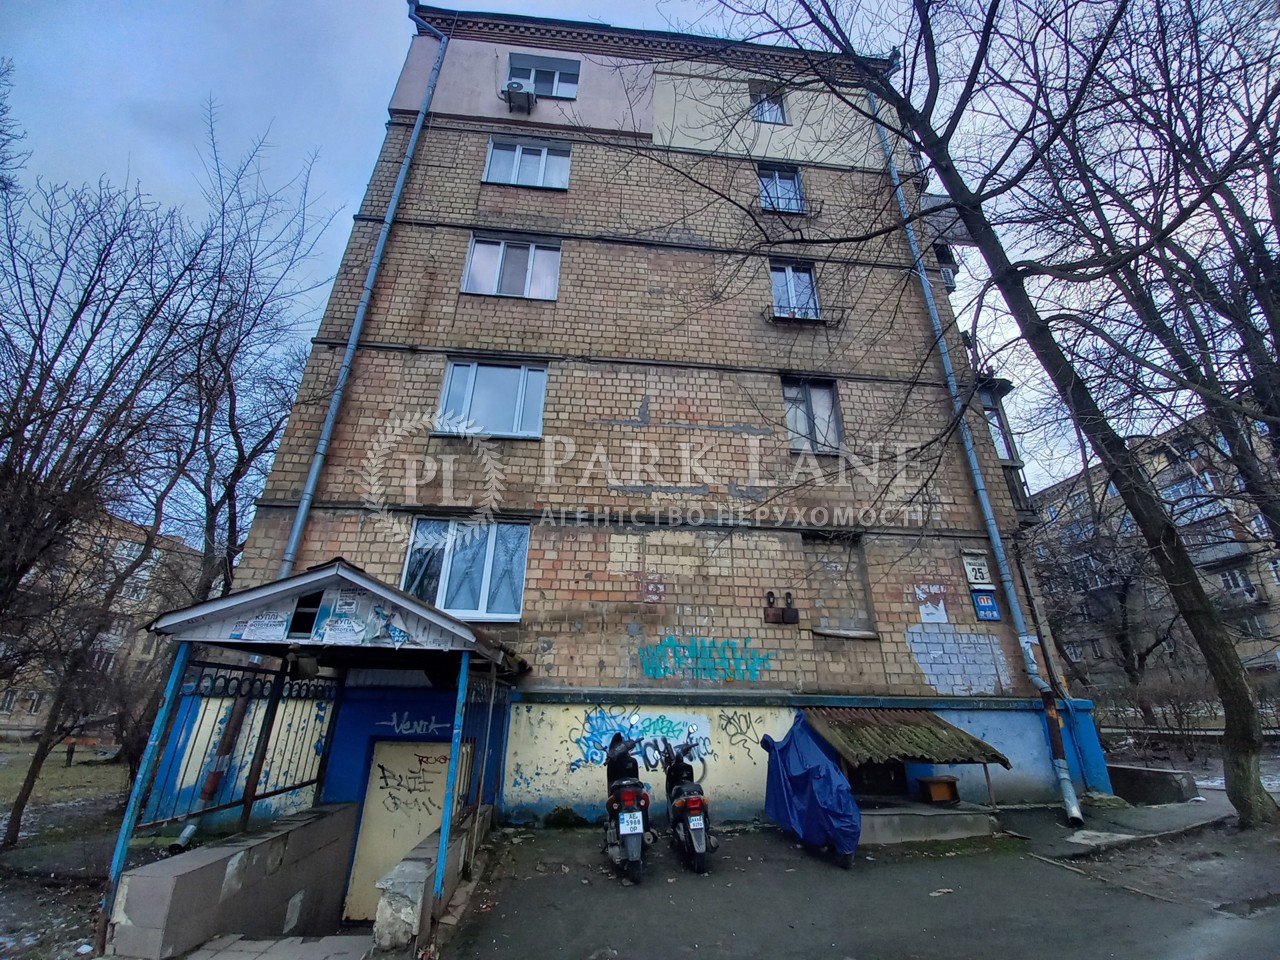  Нежилое помещение, ул. Уманская, Киев, J-33992 - Фото 1